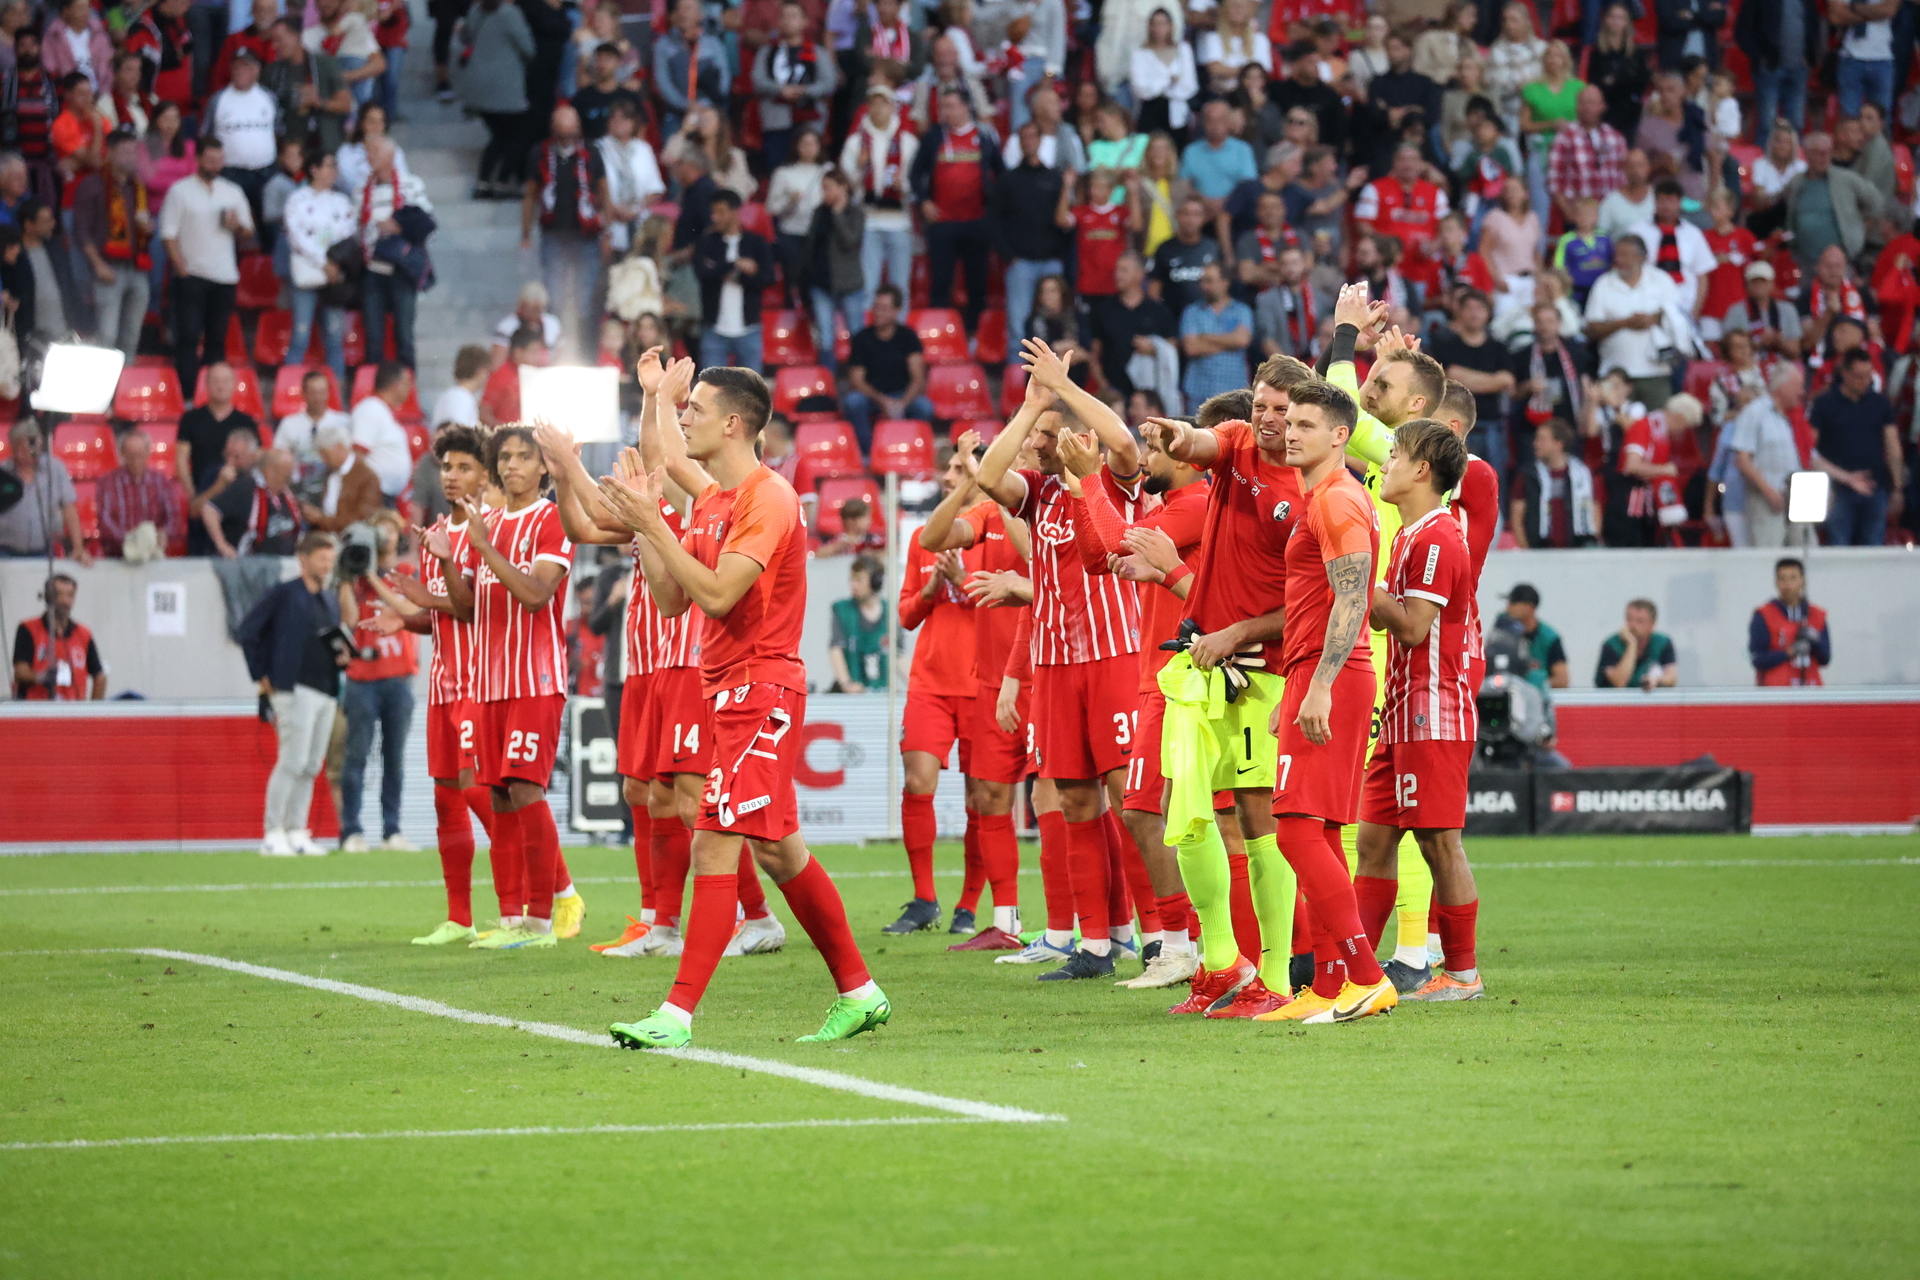 Bild: Die Freiburger Spieler bedanken sich nach dem torlosen Remis bei den Fans für die Unterstützung - Foto: Joachim Hahne